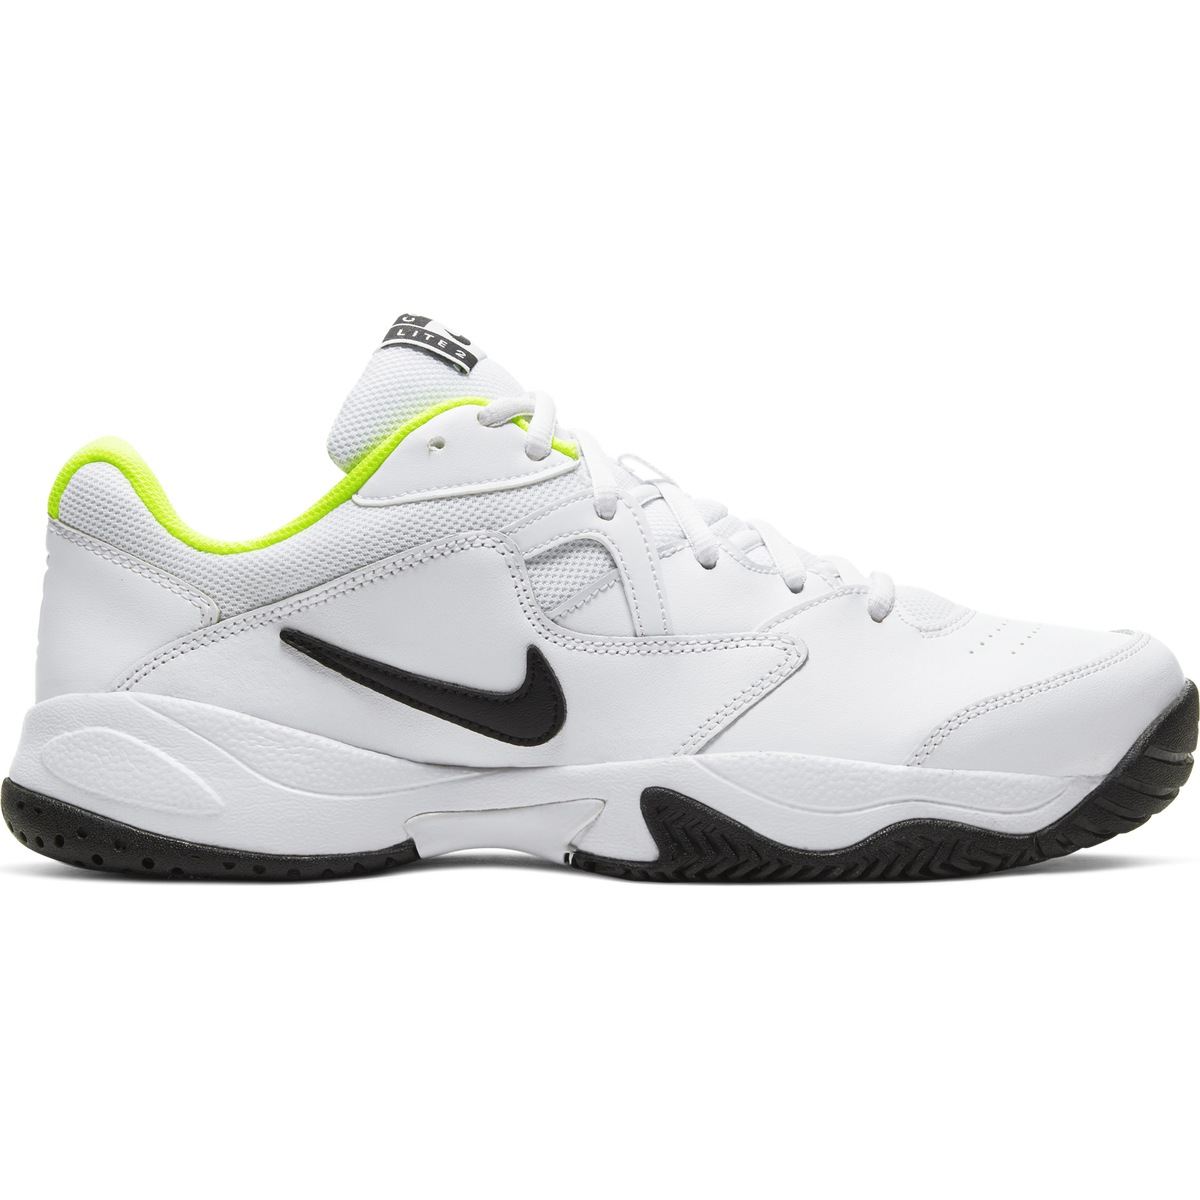 NikeCourt Lite 2 Men's Hard Court Tennis Shoe - White/Yellow | PGA TOUR